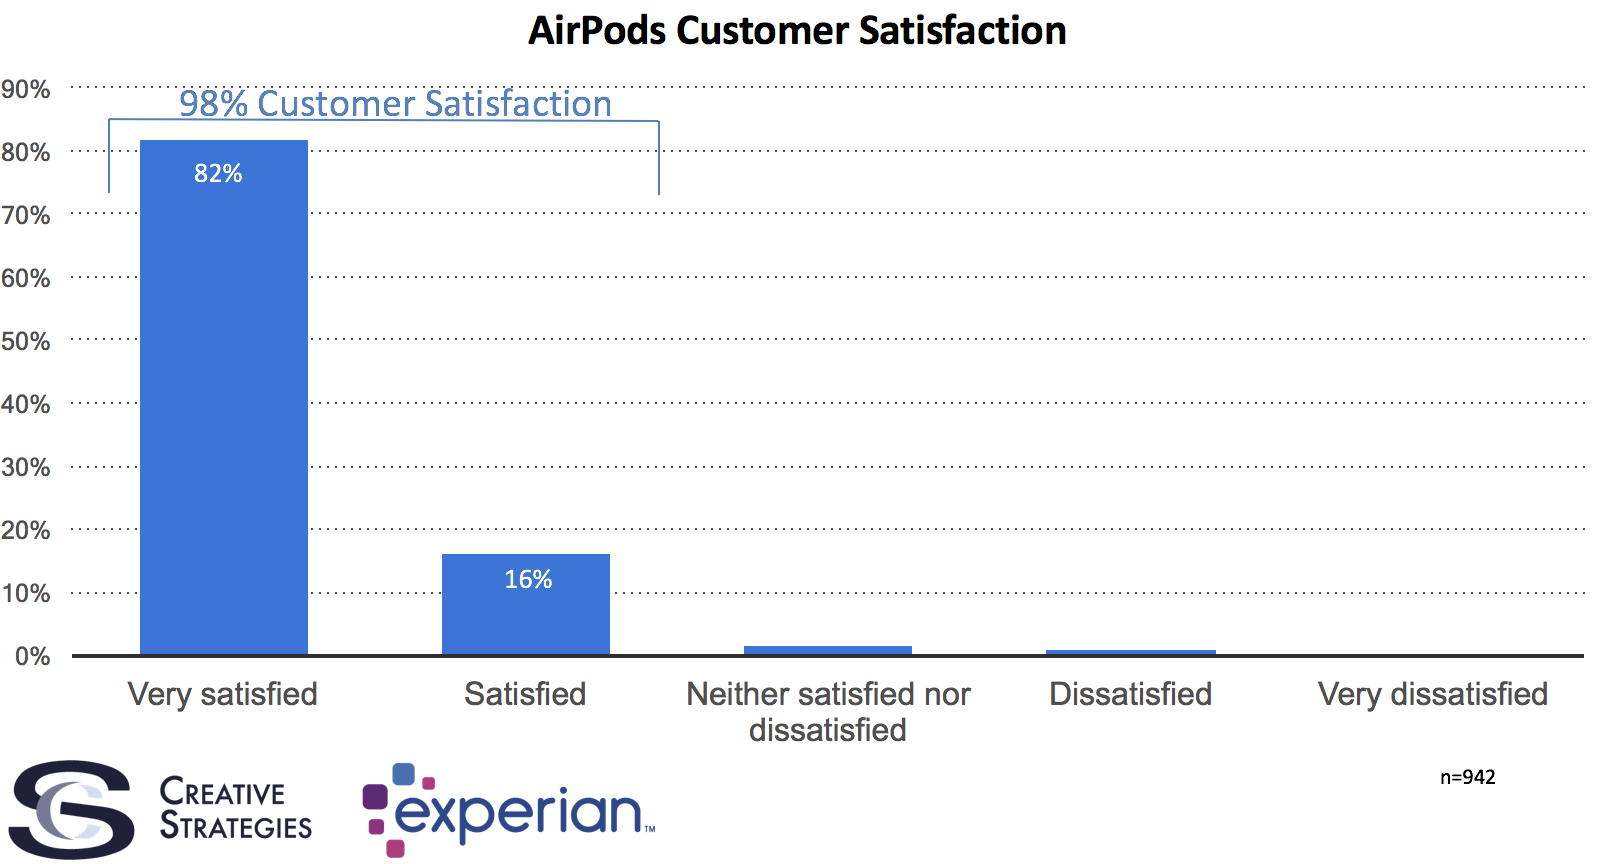 Encuesta de satisfacción sobre los AirPods